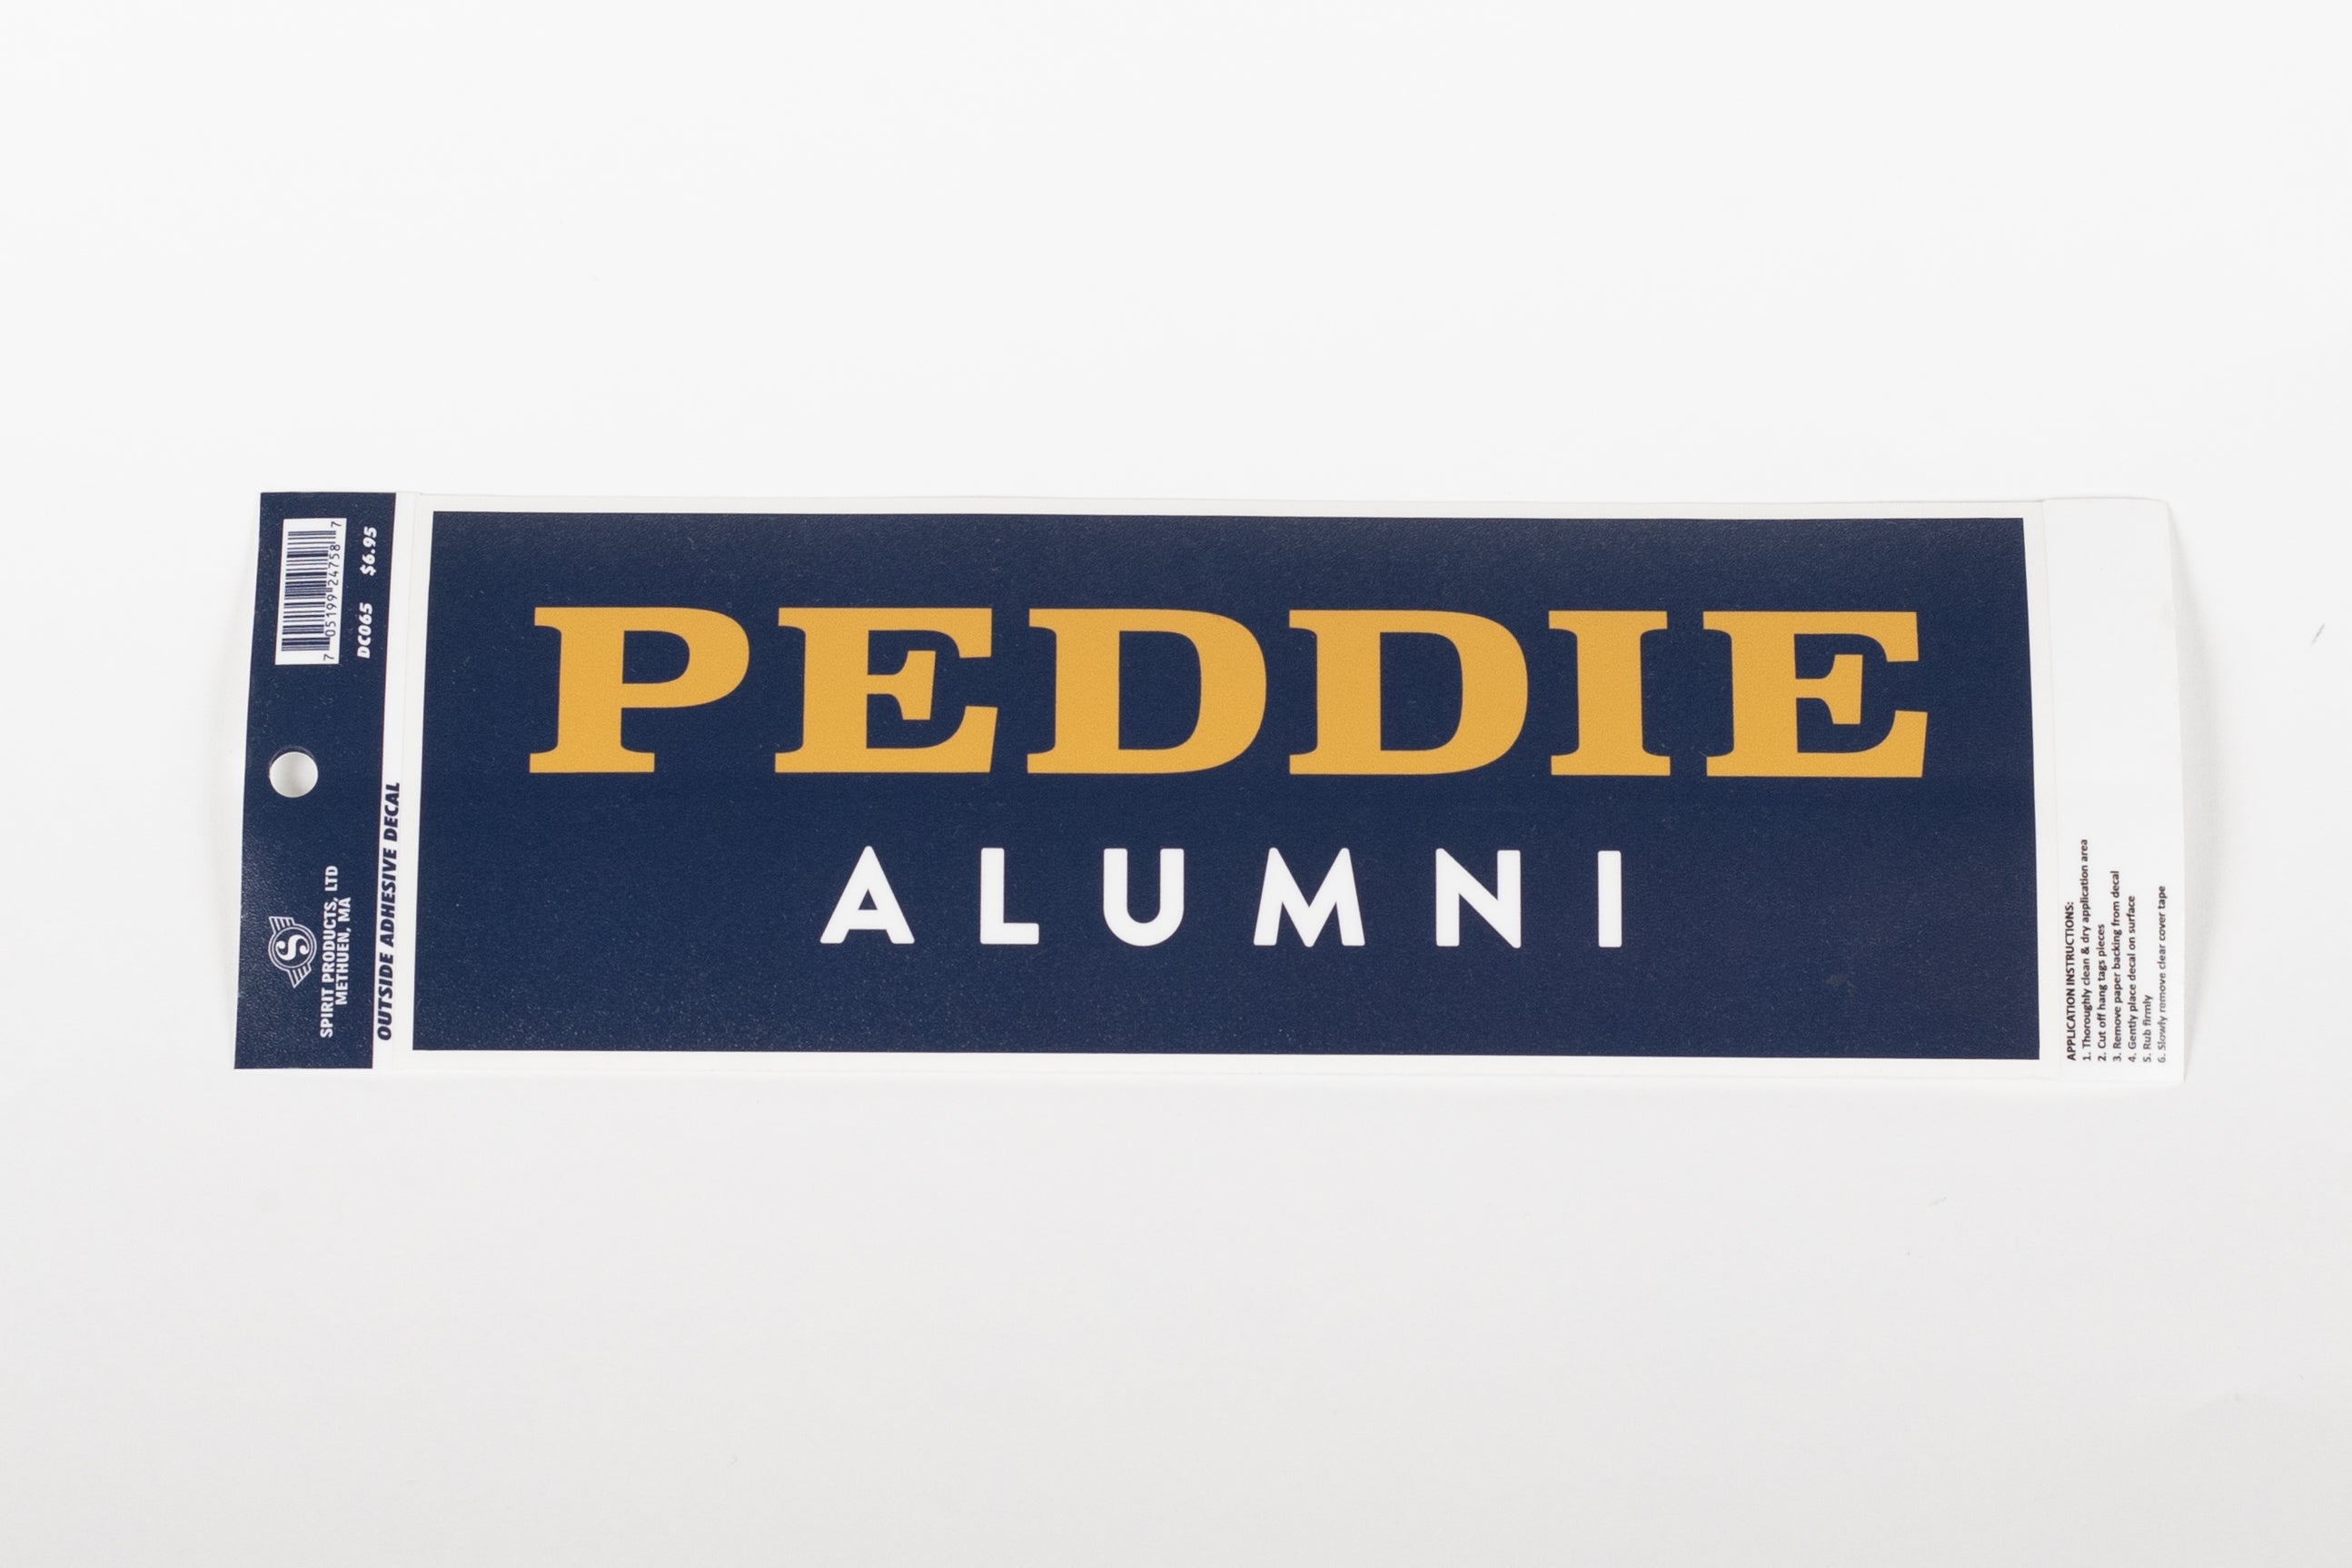 Peddie Alumni Car Decal